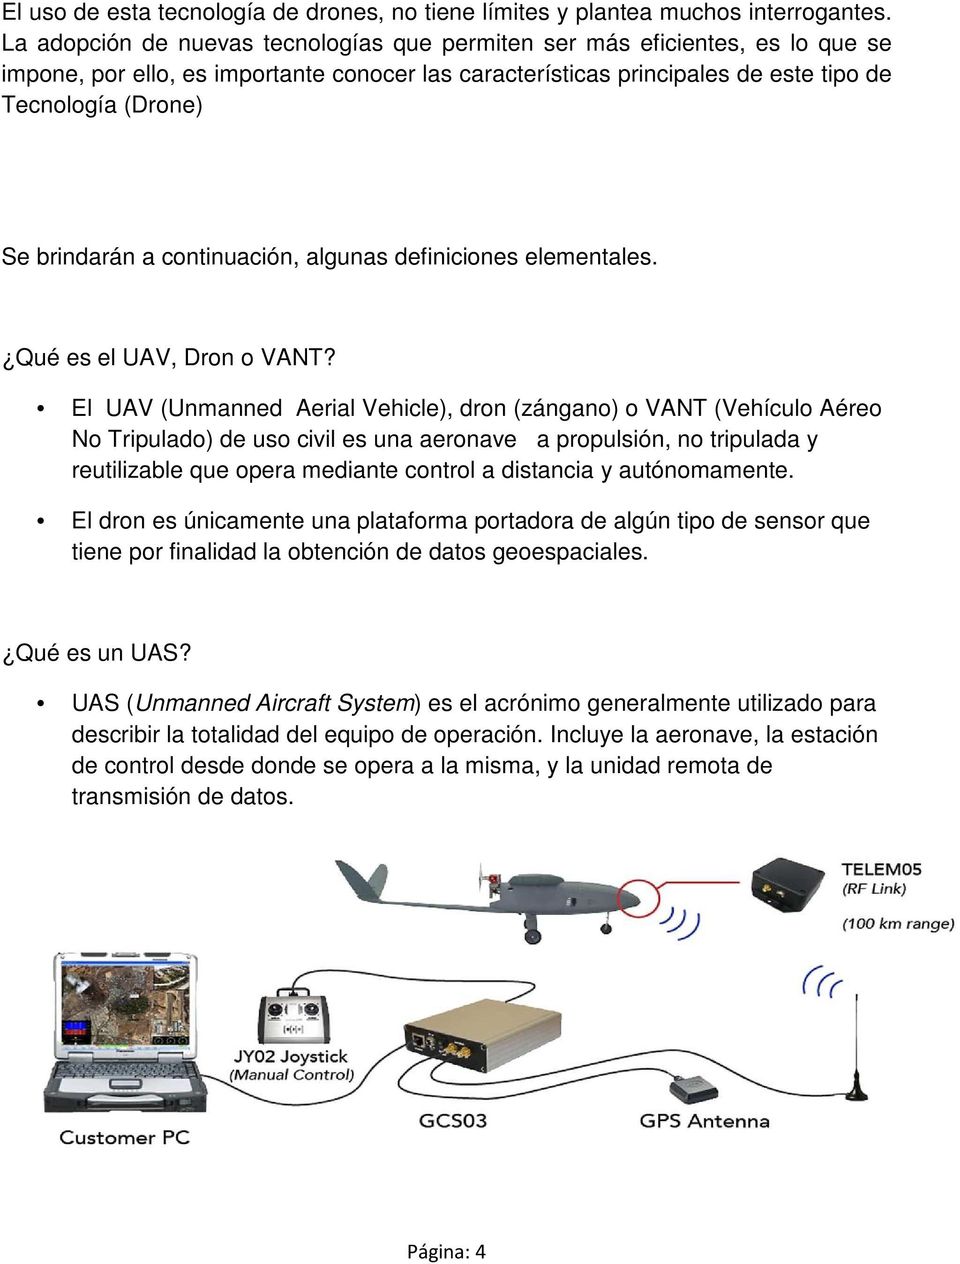 a continuación, algunas definiciones elementales. Qué es el UAV, Dron o VANT?